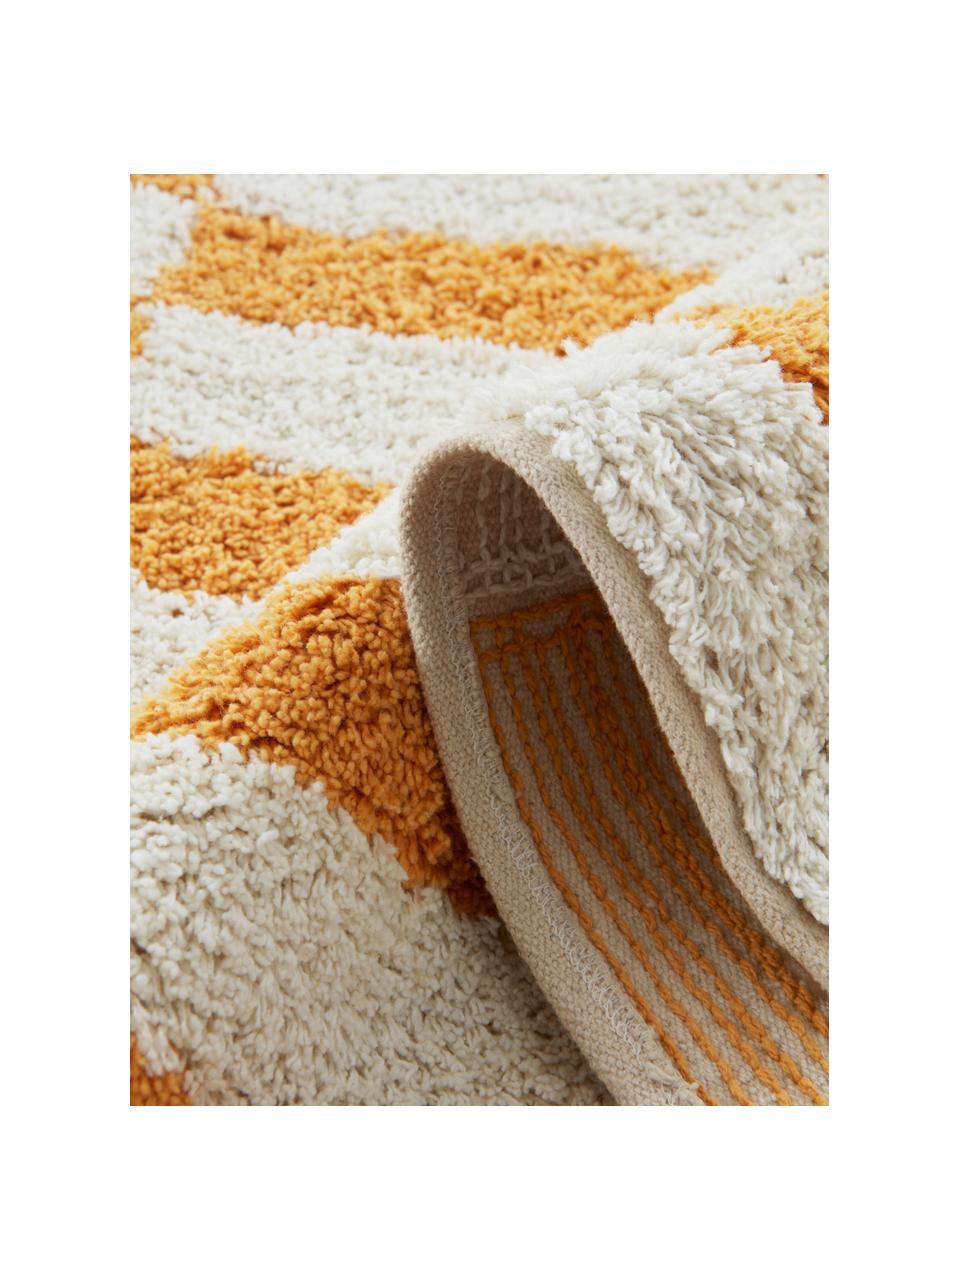 Hochflor-Teppich Sorrento, Flor: 100 % Baumwolle, Off White, Sonnengelb, B 170 x L 240 cm (Größe M)